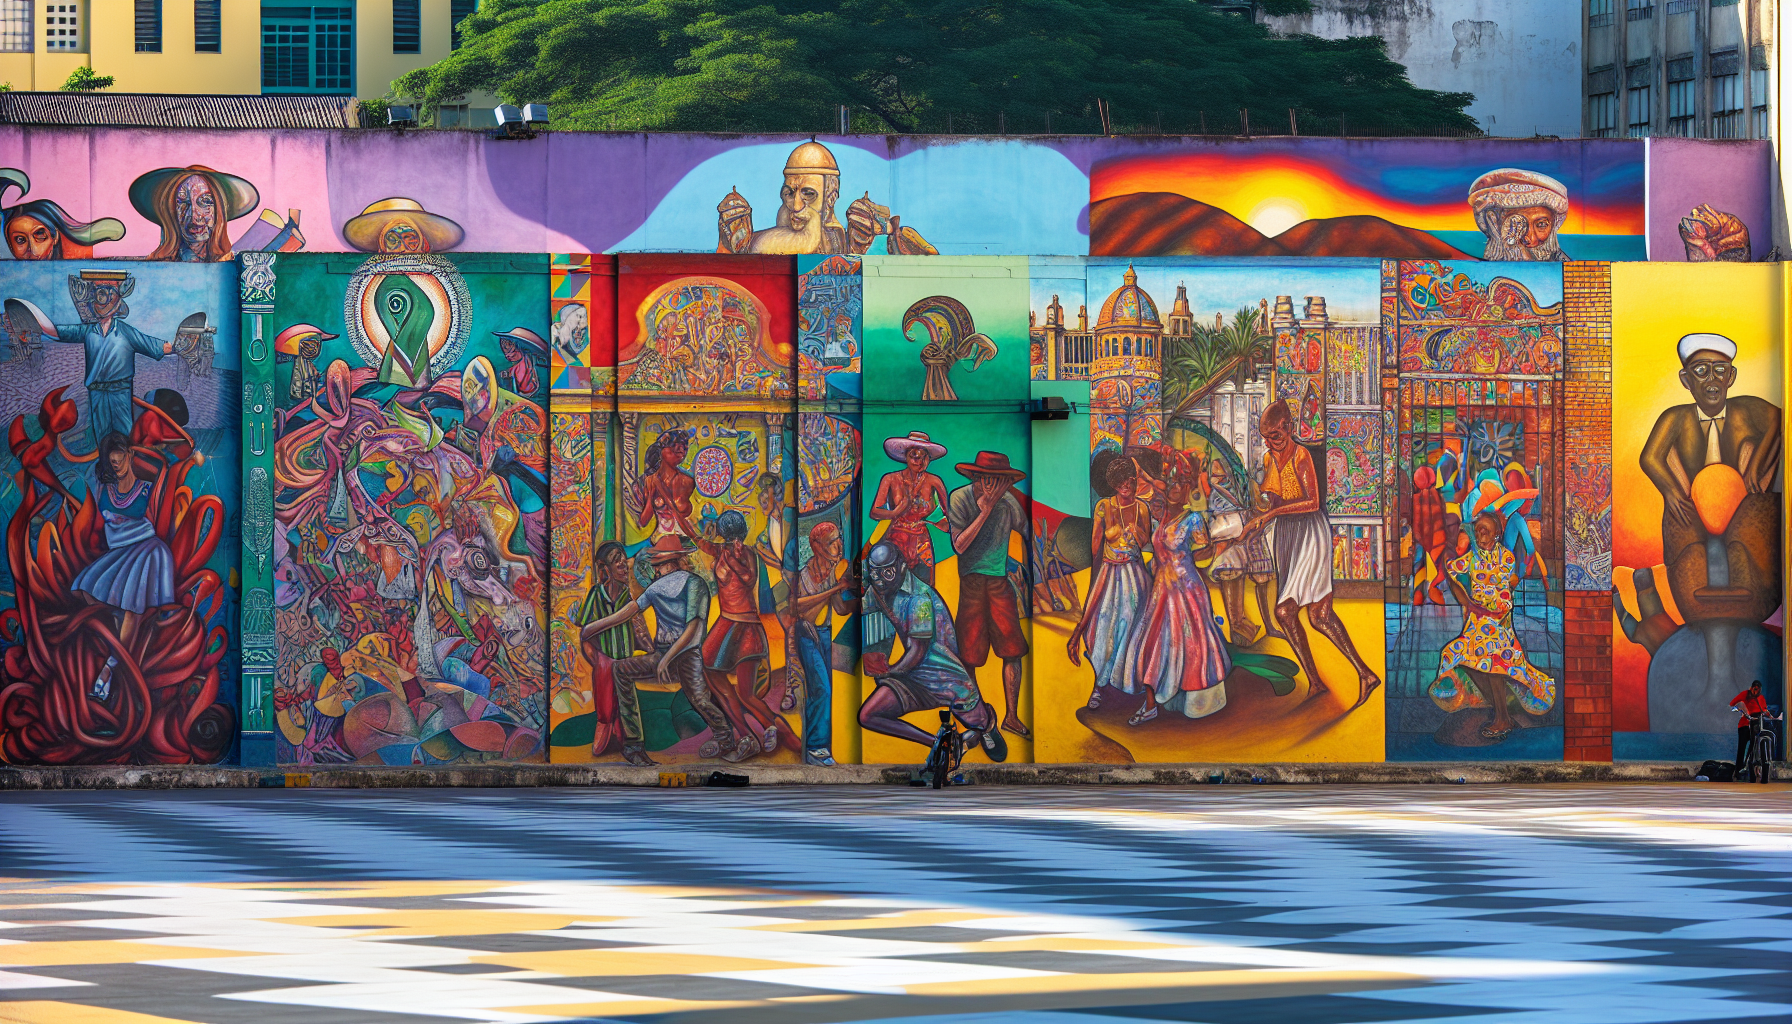 Colorful murals in Plaza de la Cultura